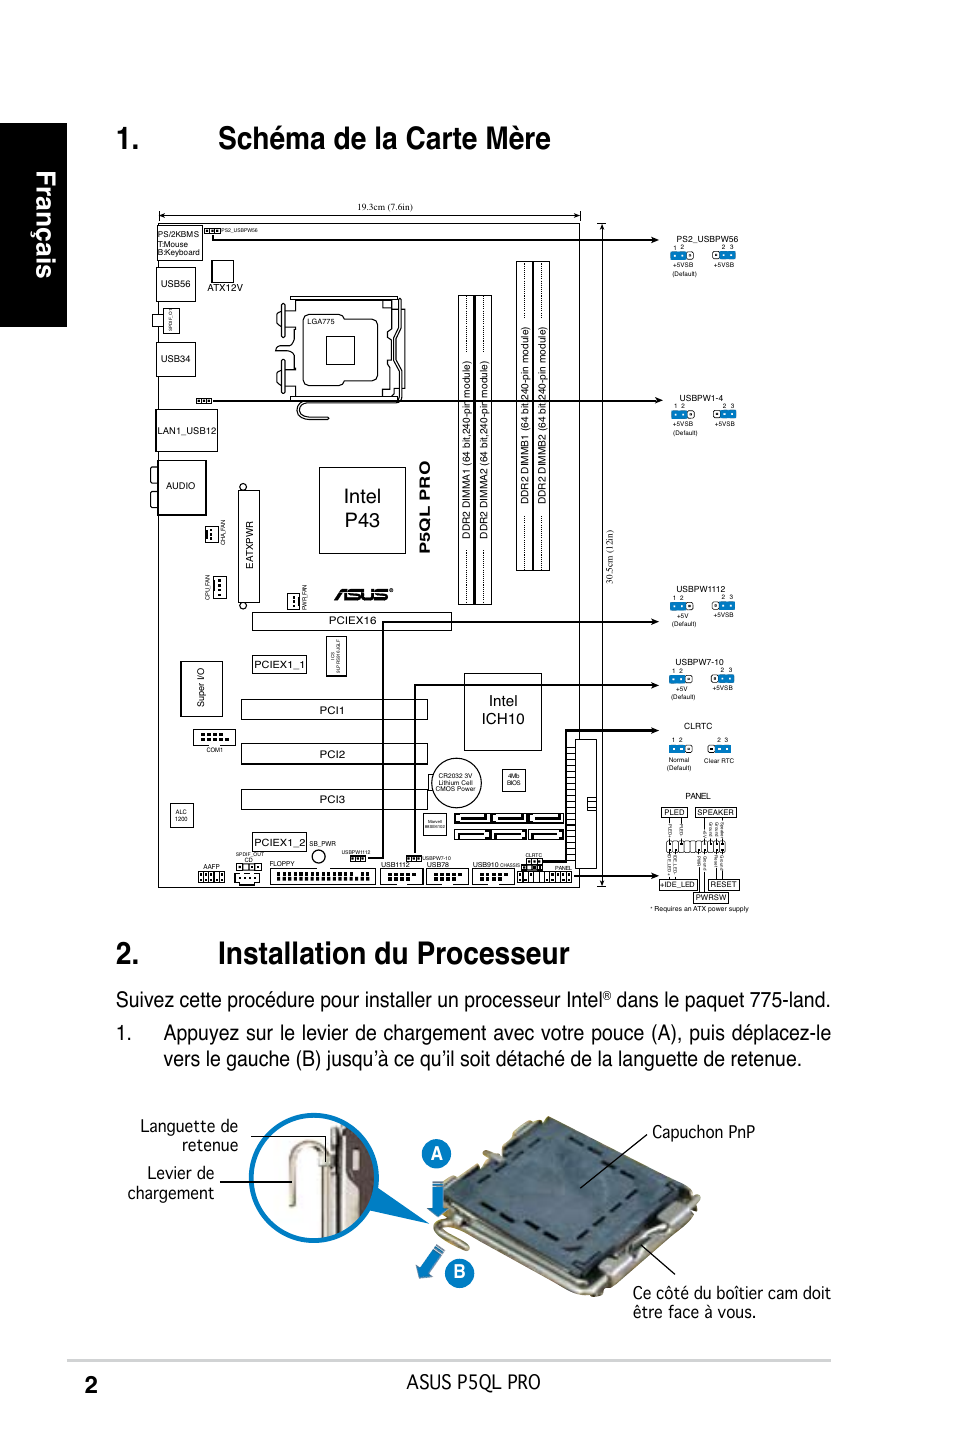 Schéma de la carte mère, Installation du processeur, Français | Asus P5QL  PRO User Manual | Page 2 / 38 | Original mode